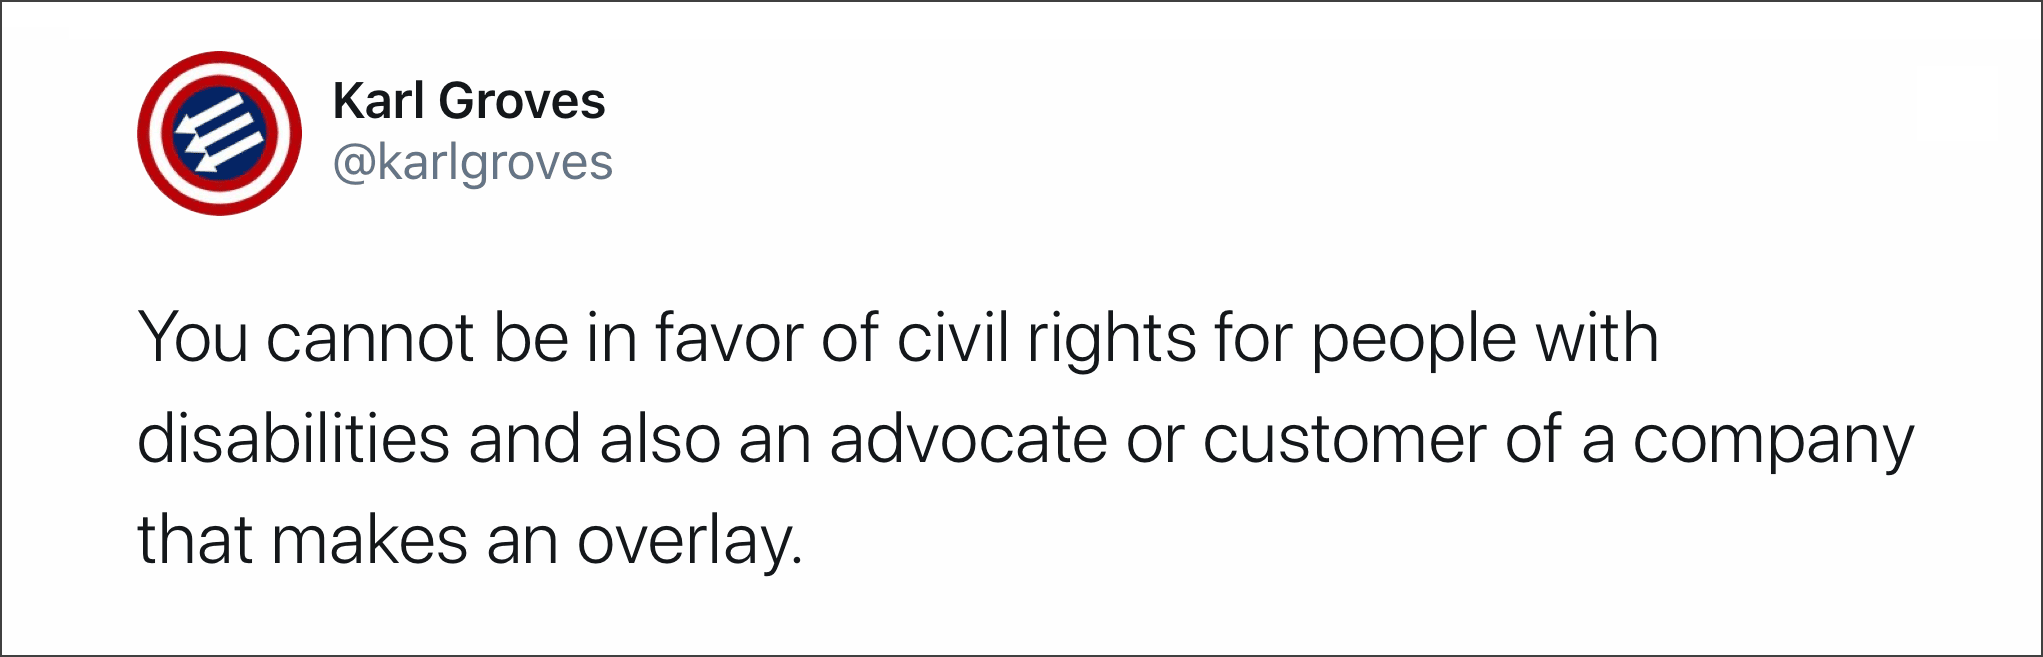 Karl Groves schreibt auf Twitter (Original in Englisch): Man kann nicht gleichzeitig für Behindertenrechte und Befürworter von Overlay-Lösungen sein.